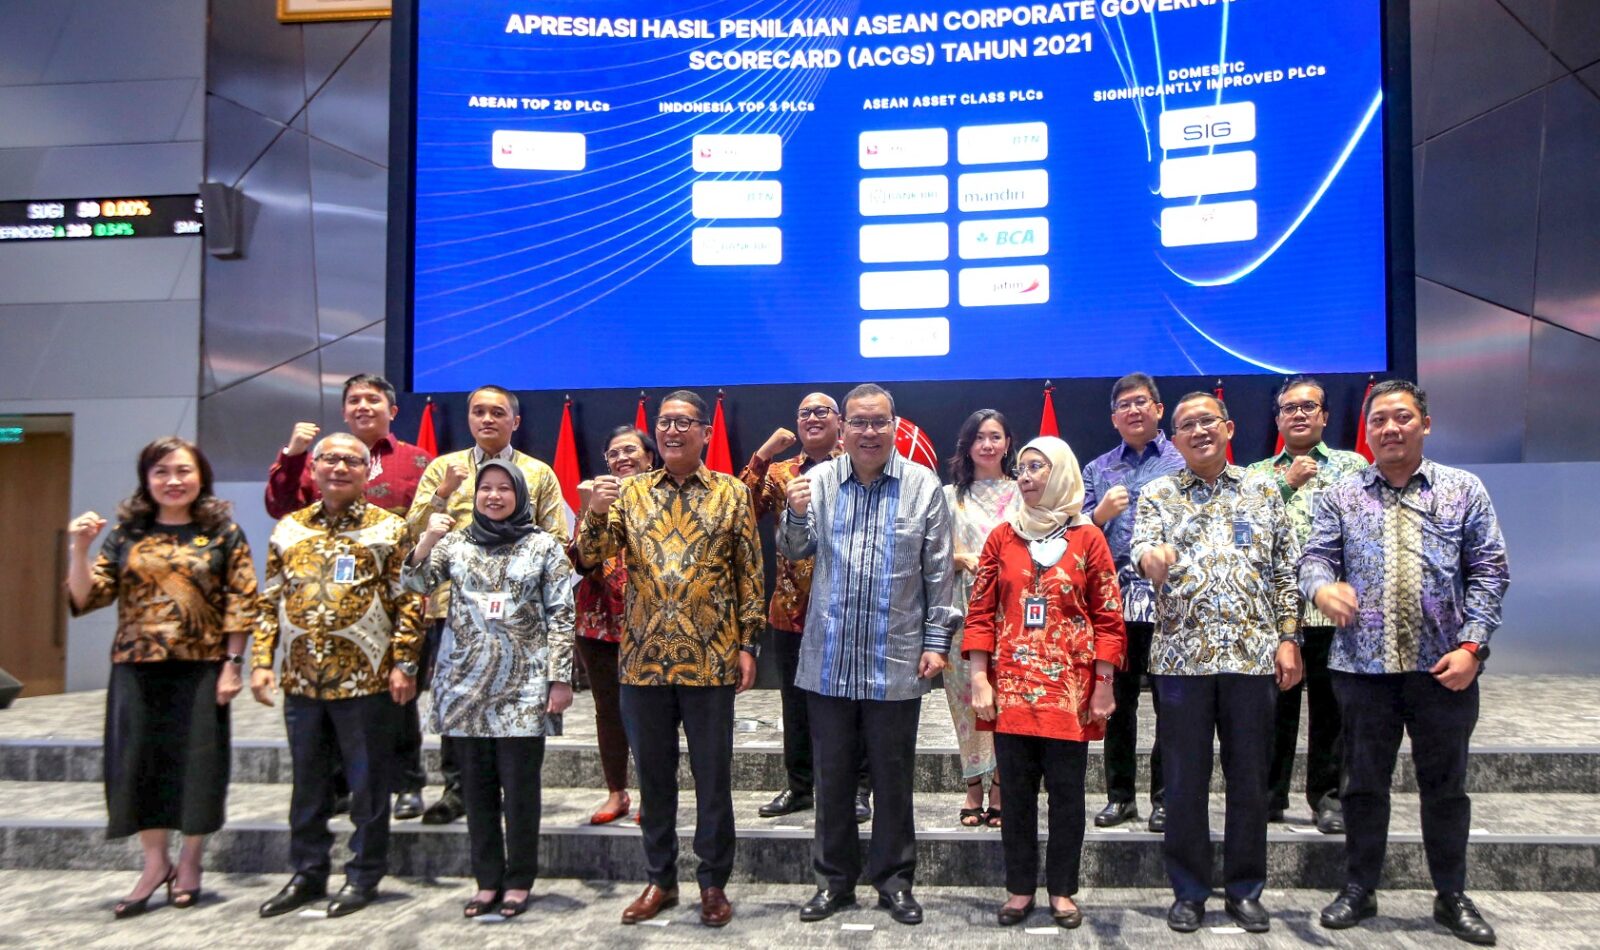 SVP of Legal, Governance & Compliance SIG, Maralda H. Kairupan (kiri atas) bersama perwakilan perusahaan pemenang ASEAN Corporate Governance Scorecard Tahun 2021, di Main Hall PT Bursa Efek Indonesia, Jakarta, Selasa (31/1).